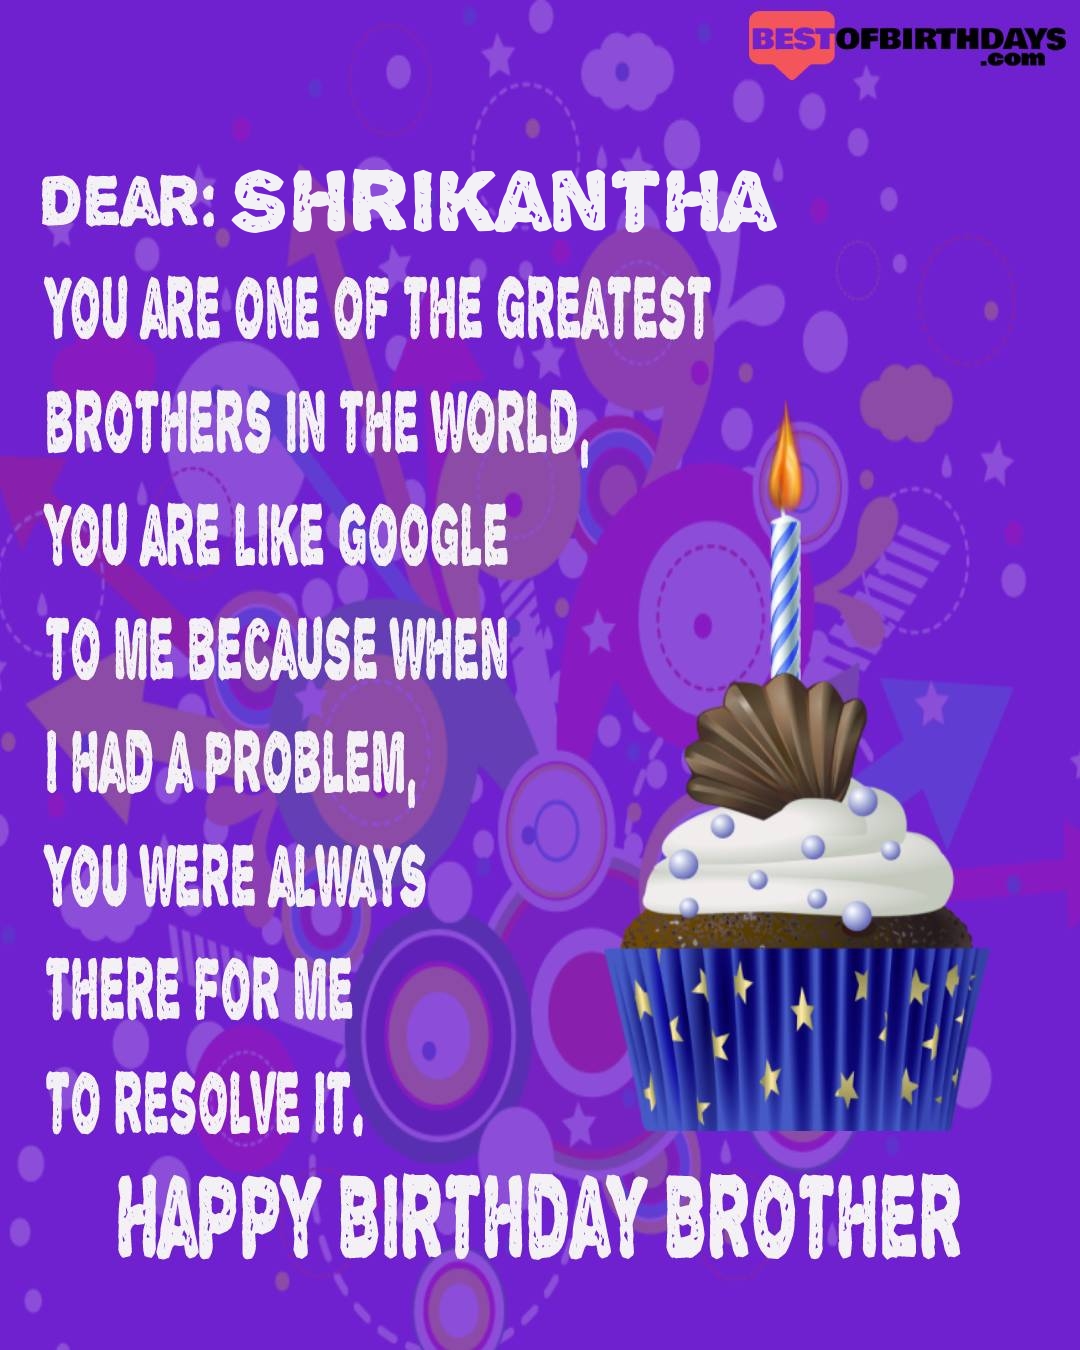 Happy birthday shrikantha bhai brother bro